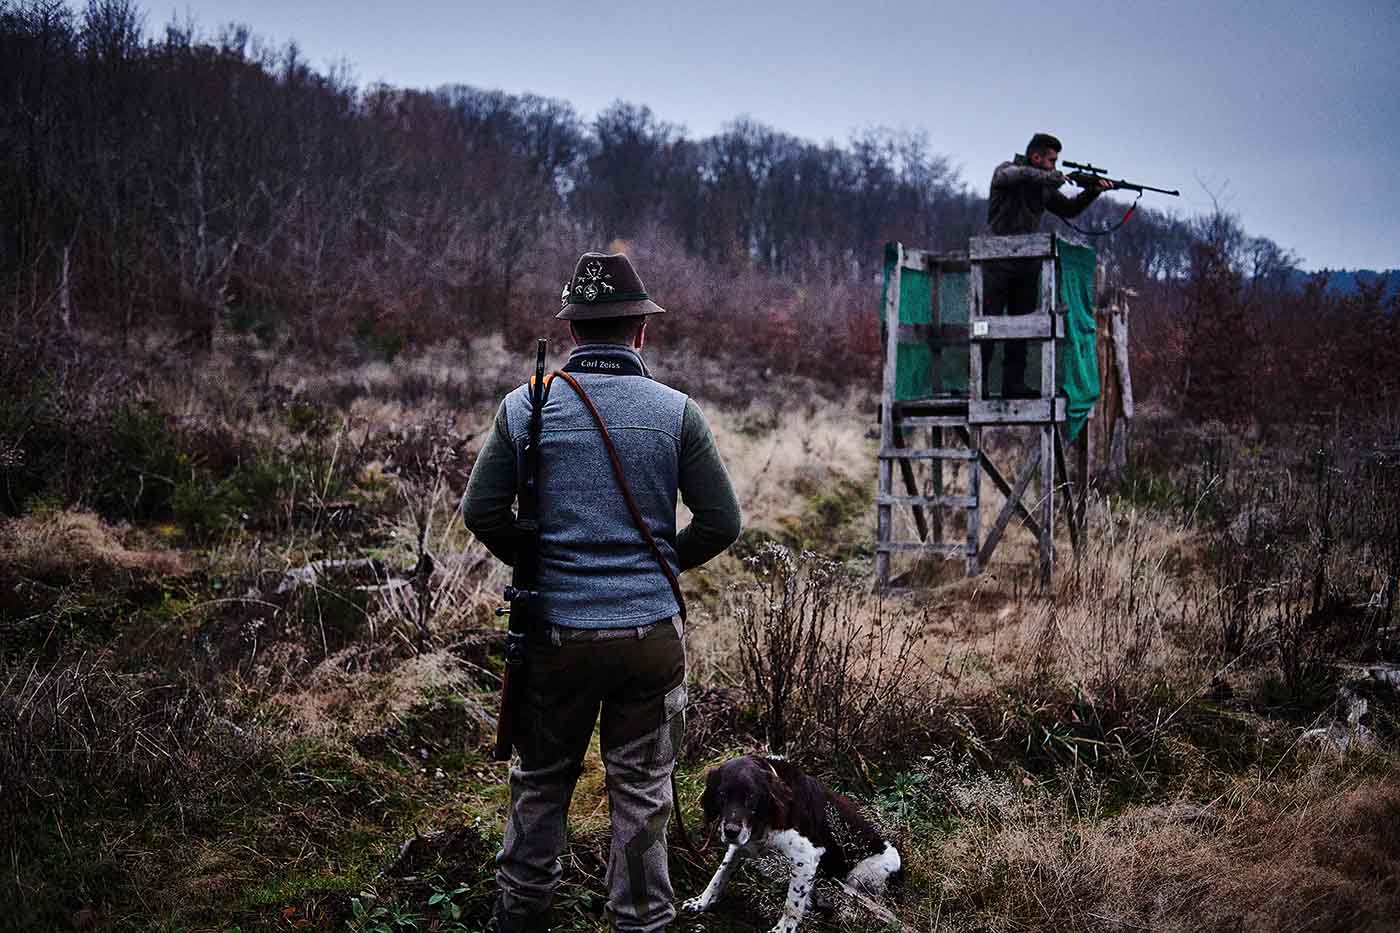 Jäger bei der Jagd Foto-Reportage für das Kochbuch Wild Wald Genuss von Harald Rüssel